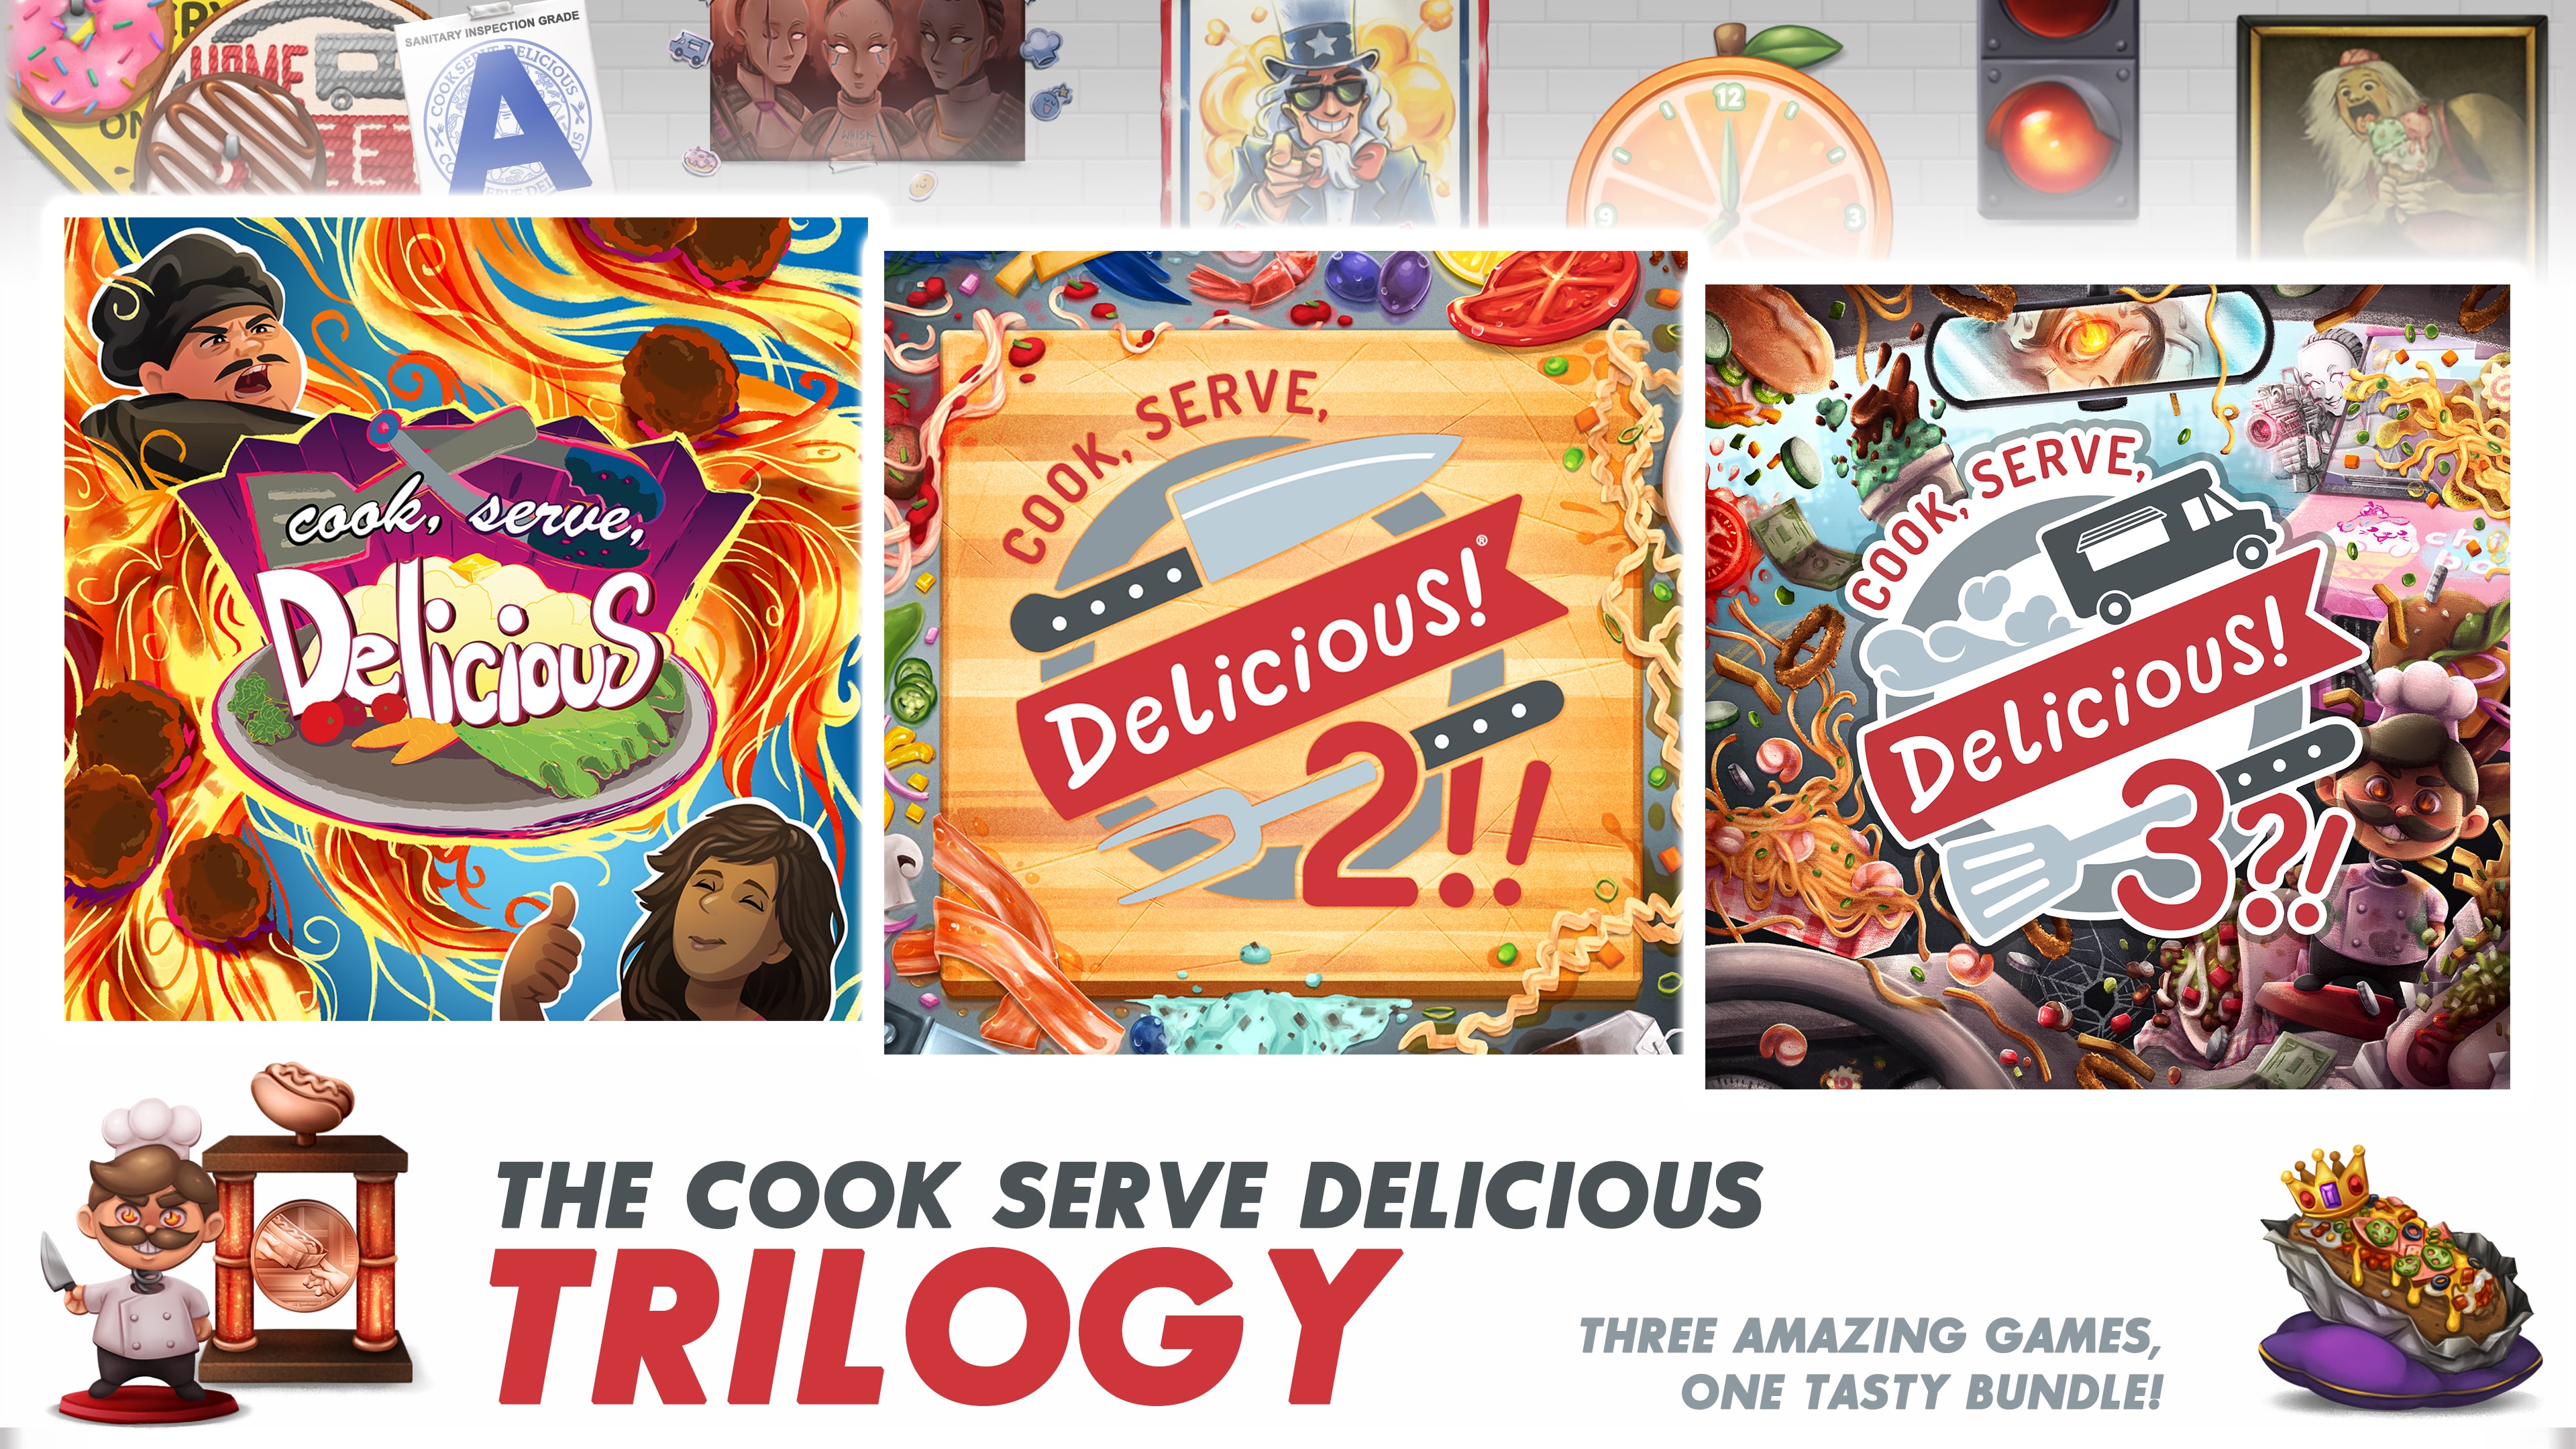 Cook, Serve, Delicious! The Trilogy Bundle!